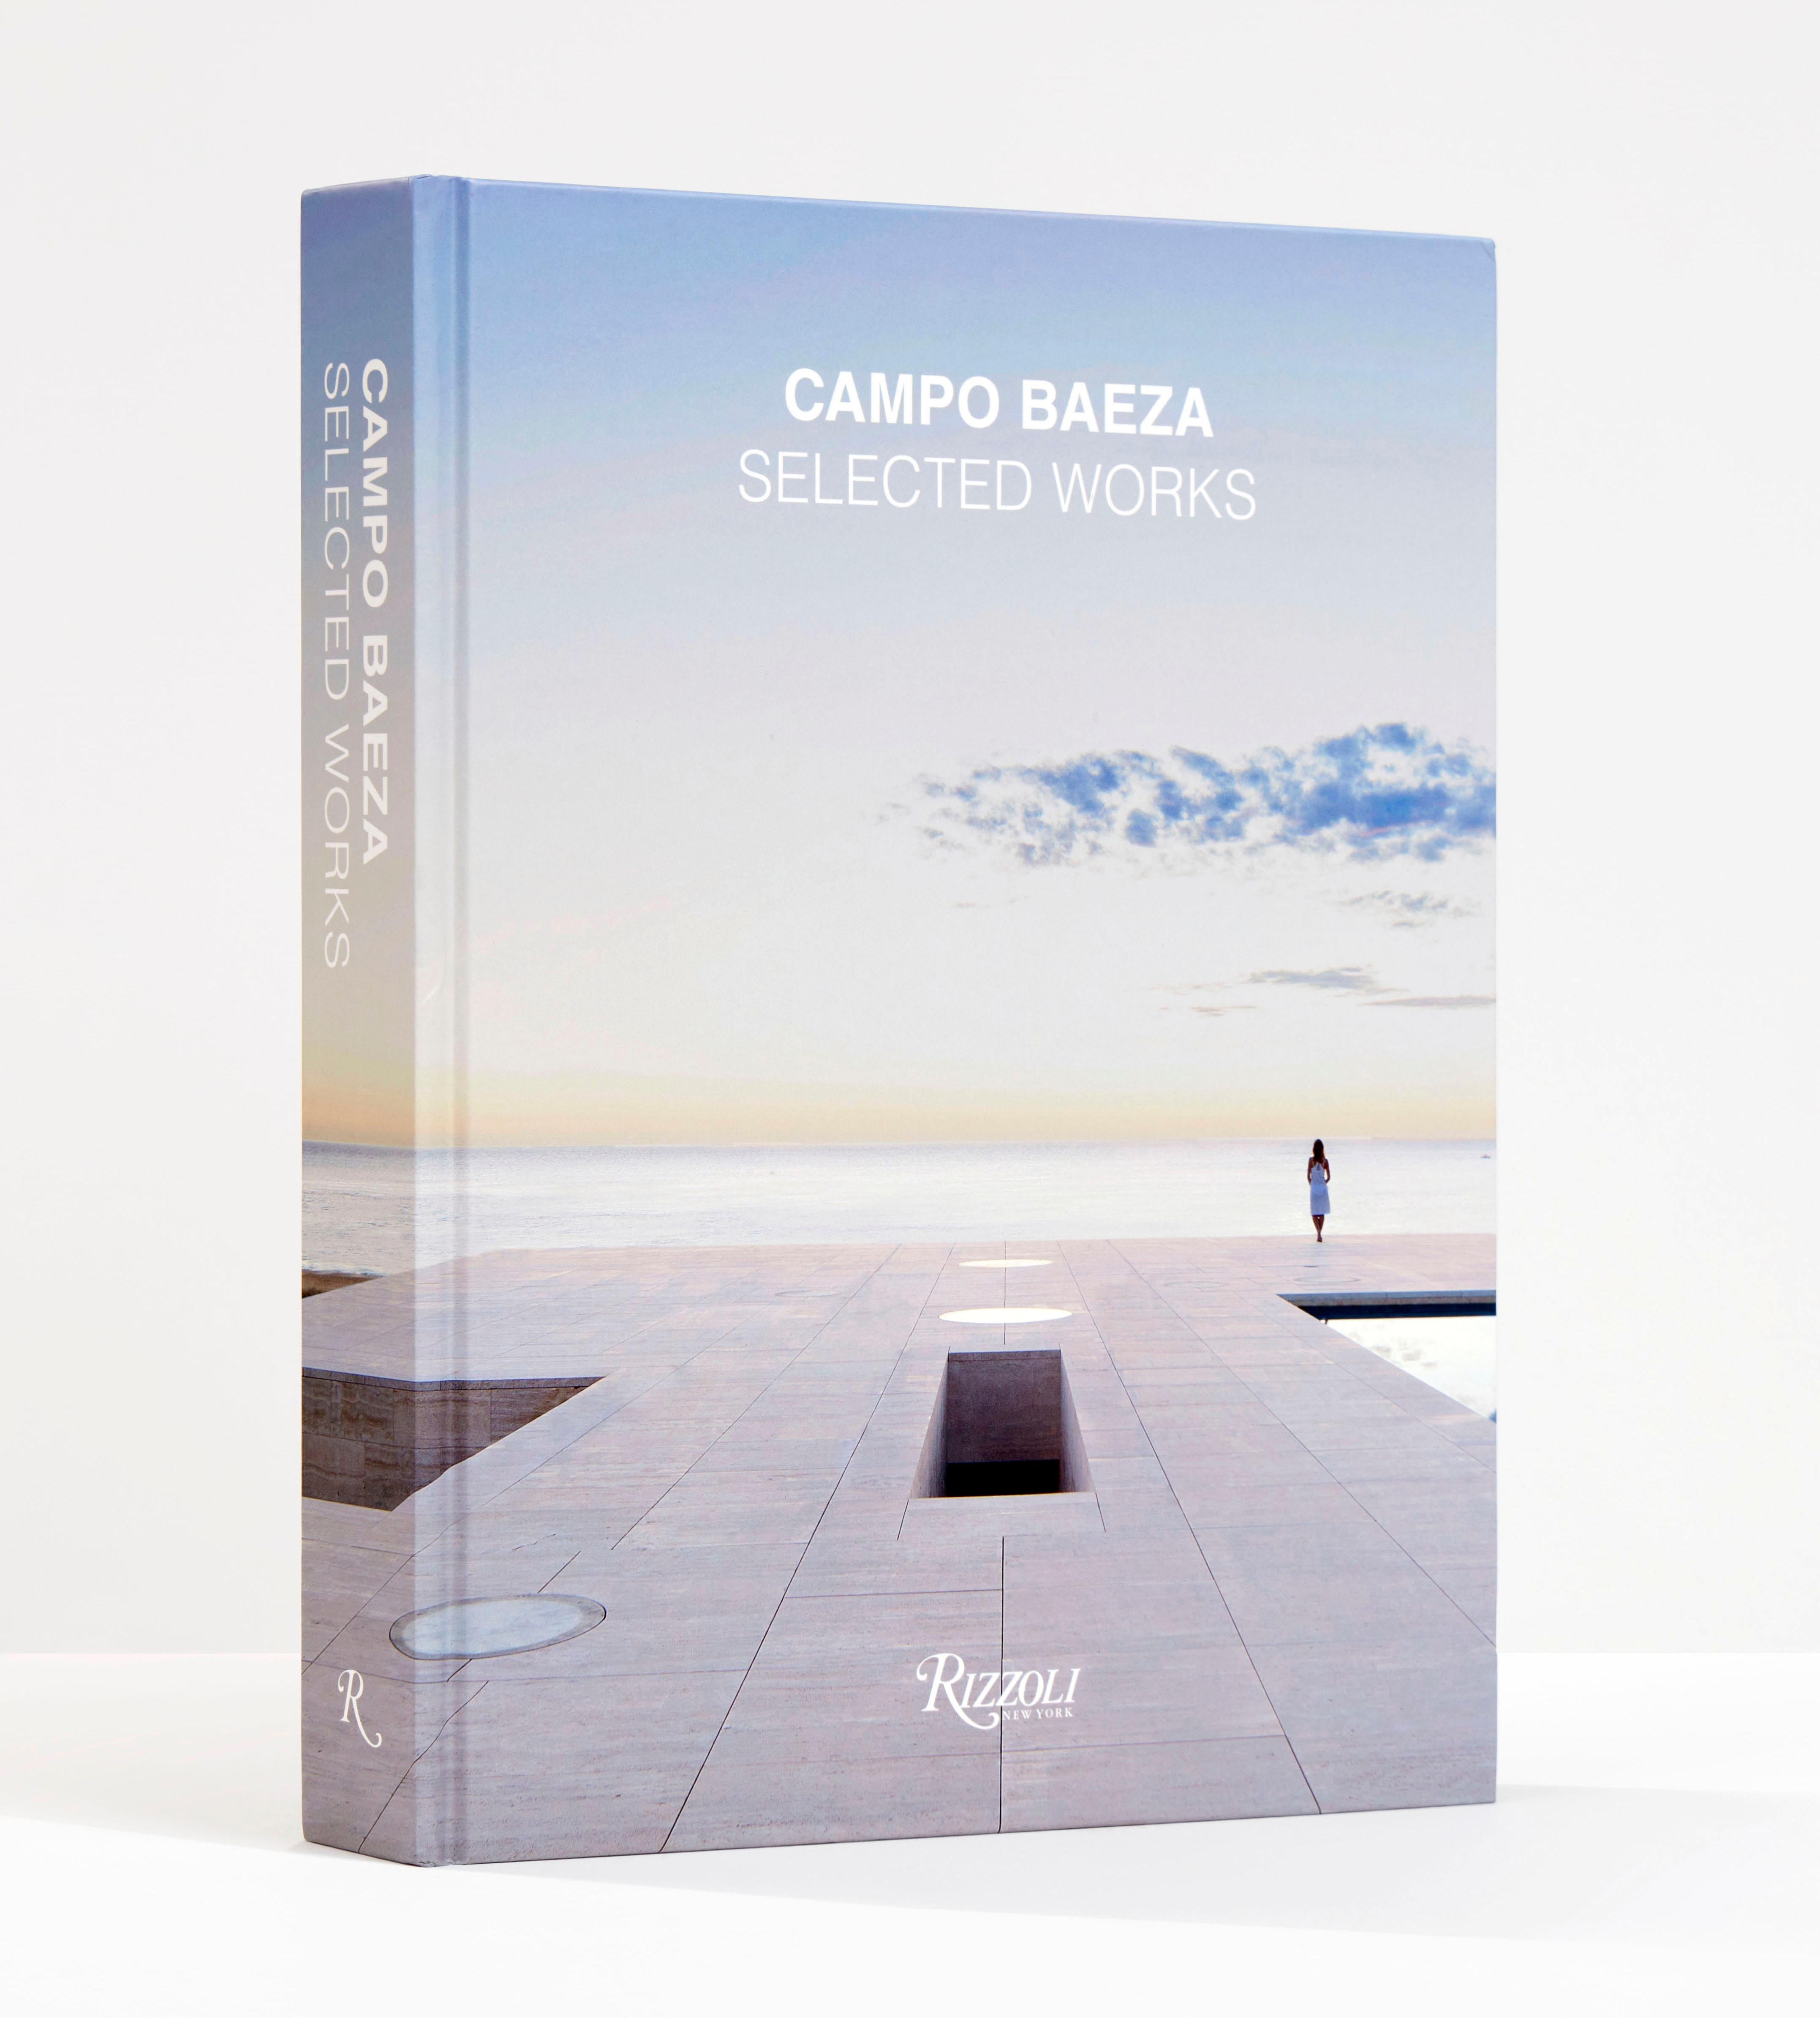 Une étude complète de l'œuvre d'un maître du design moderniste d'aujourd'hui.

Alberto Campo Baeza, l'une des voix les plus distinguées de l'architecture contemporaine, est réputé pour l'ensemble de son œuvre qui respire la puissance d'une